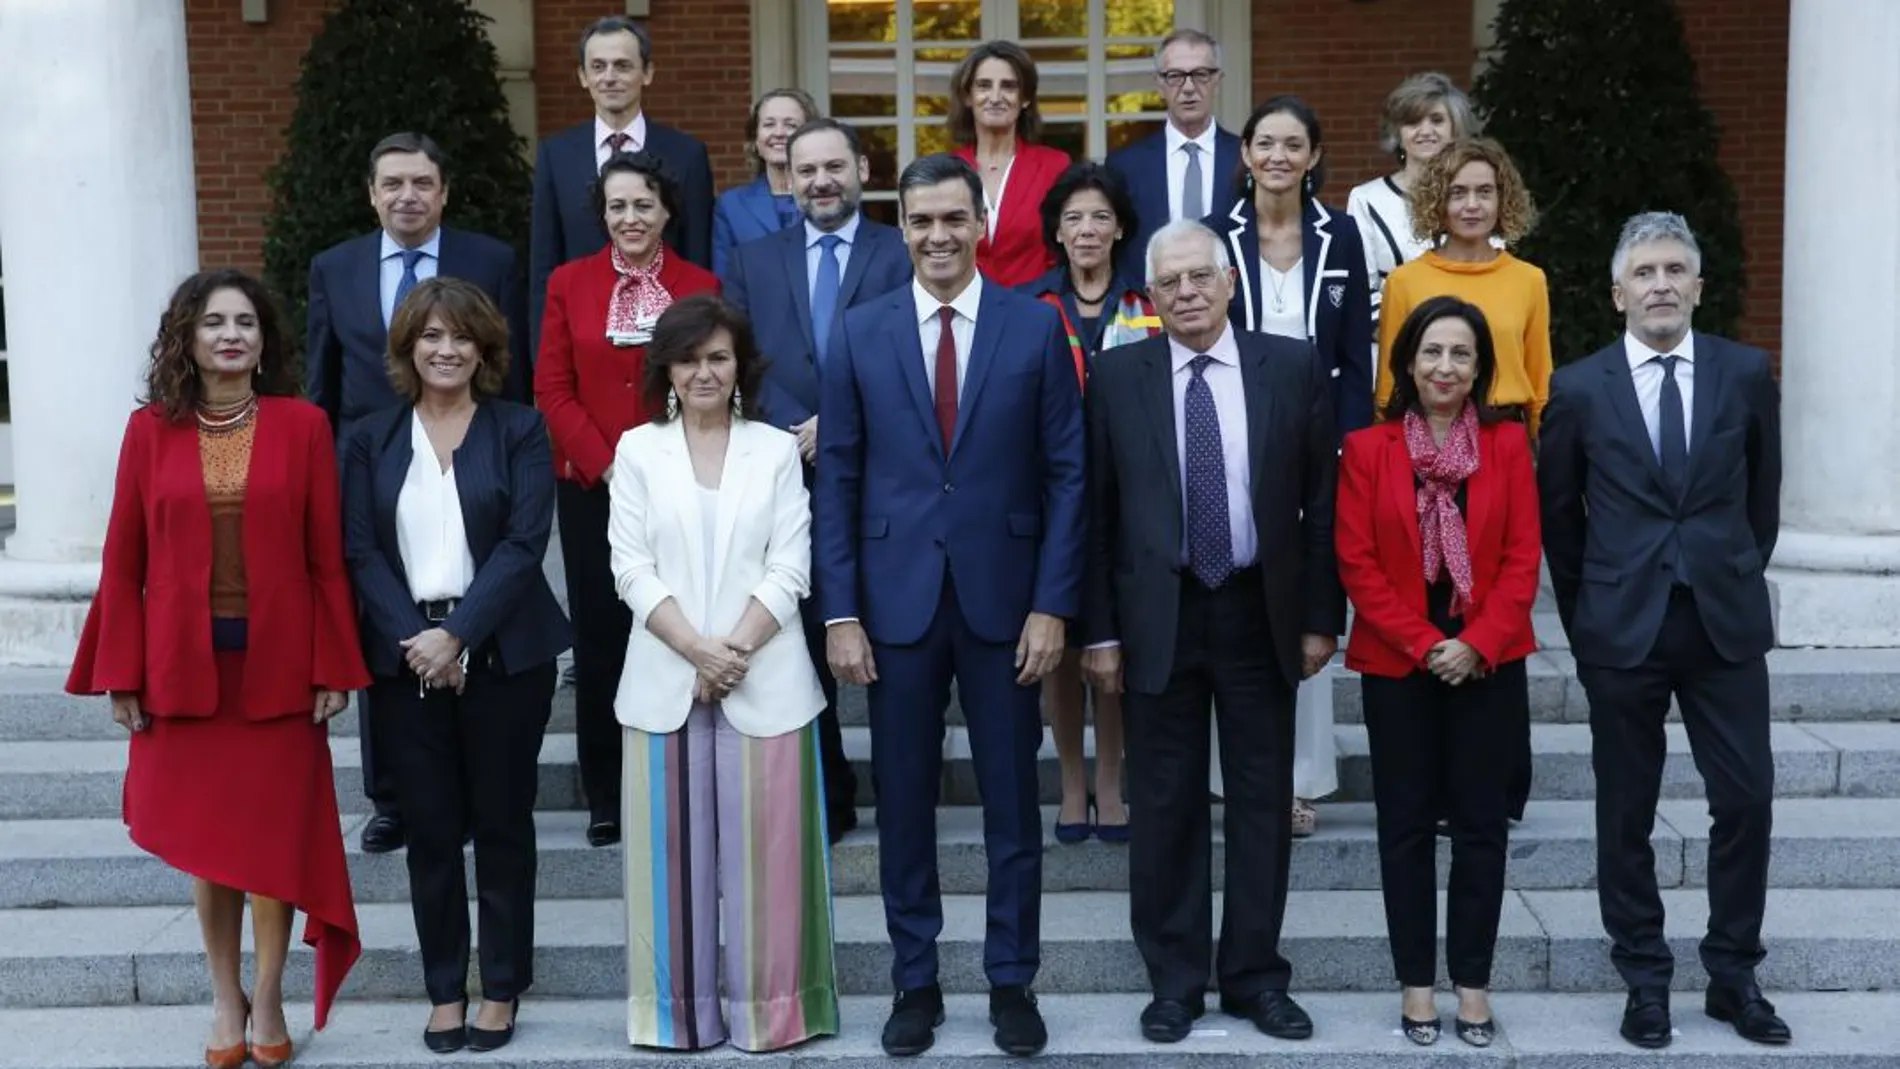 Pedro Sánchez volvió a posar ayer, por tercera vez, junto a sus ministros para la tradicional foto de familia en las escalinatas del Palacio de La Moncloa / Javier Fdez. Largo